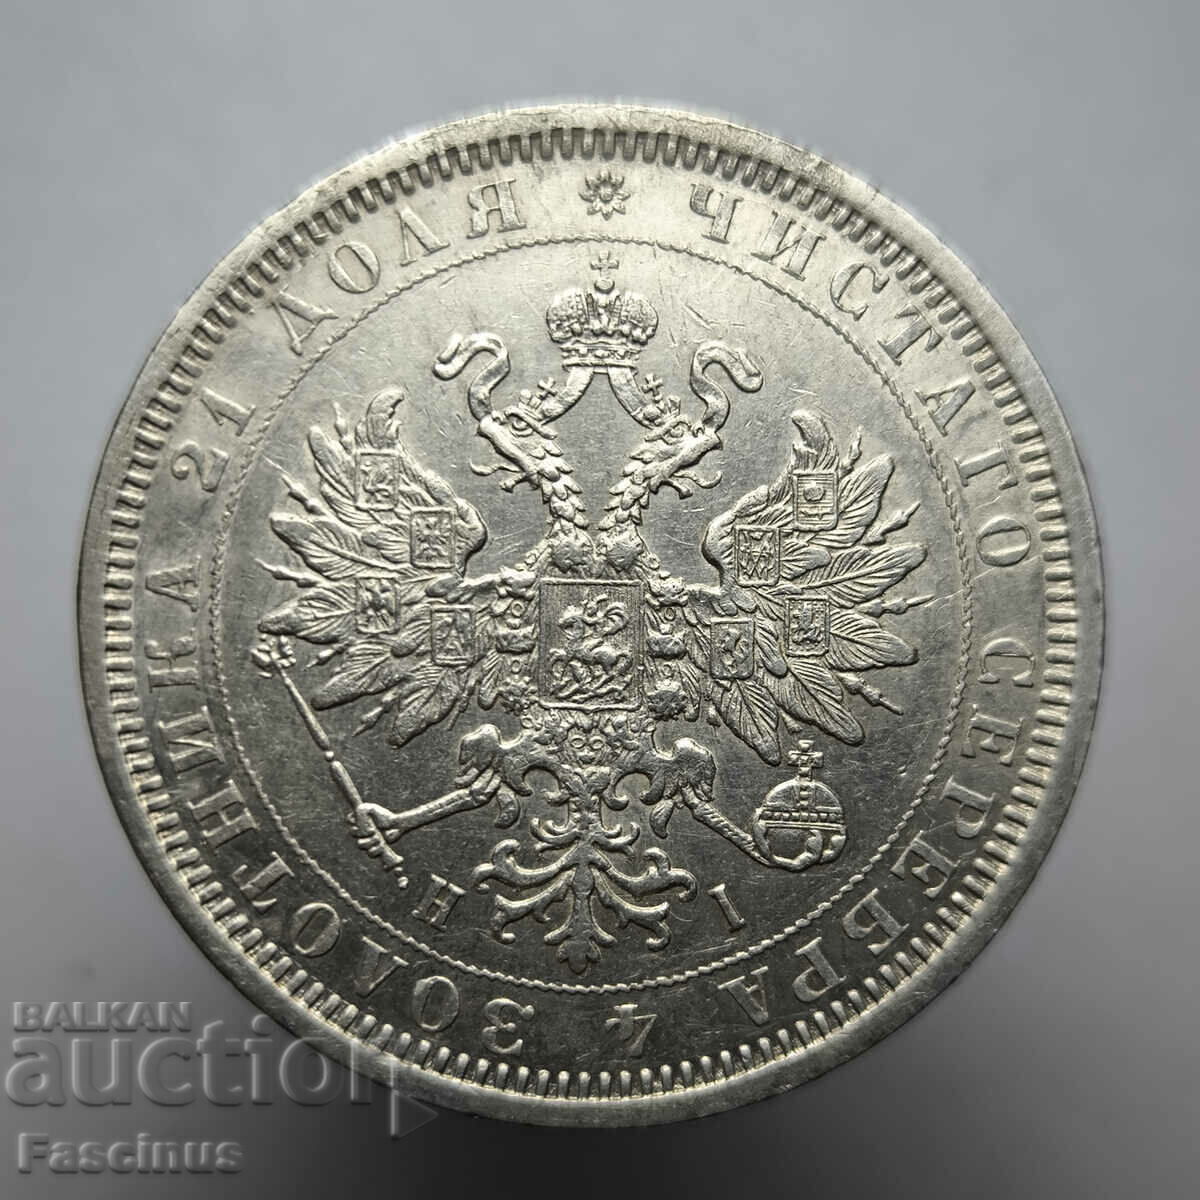 Monedă de argint 1 rublă 1877 • Rusia